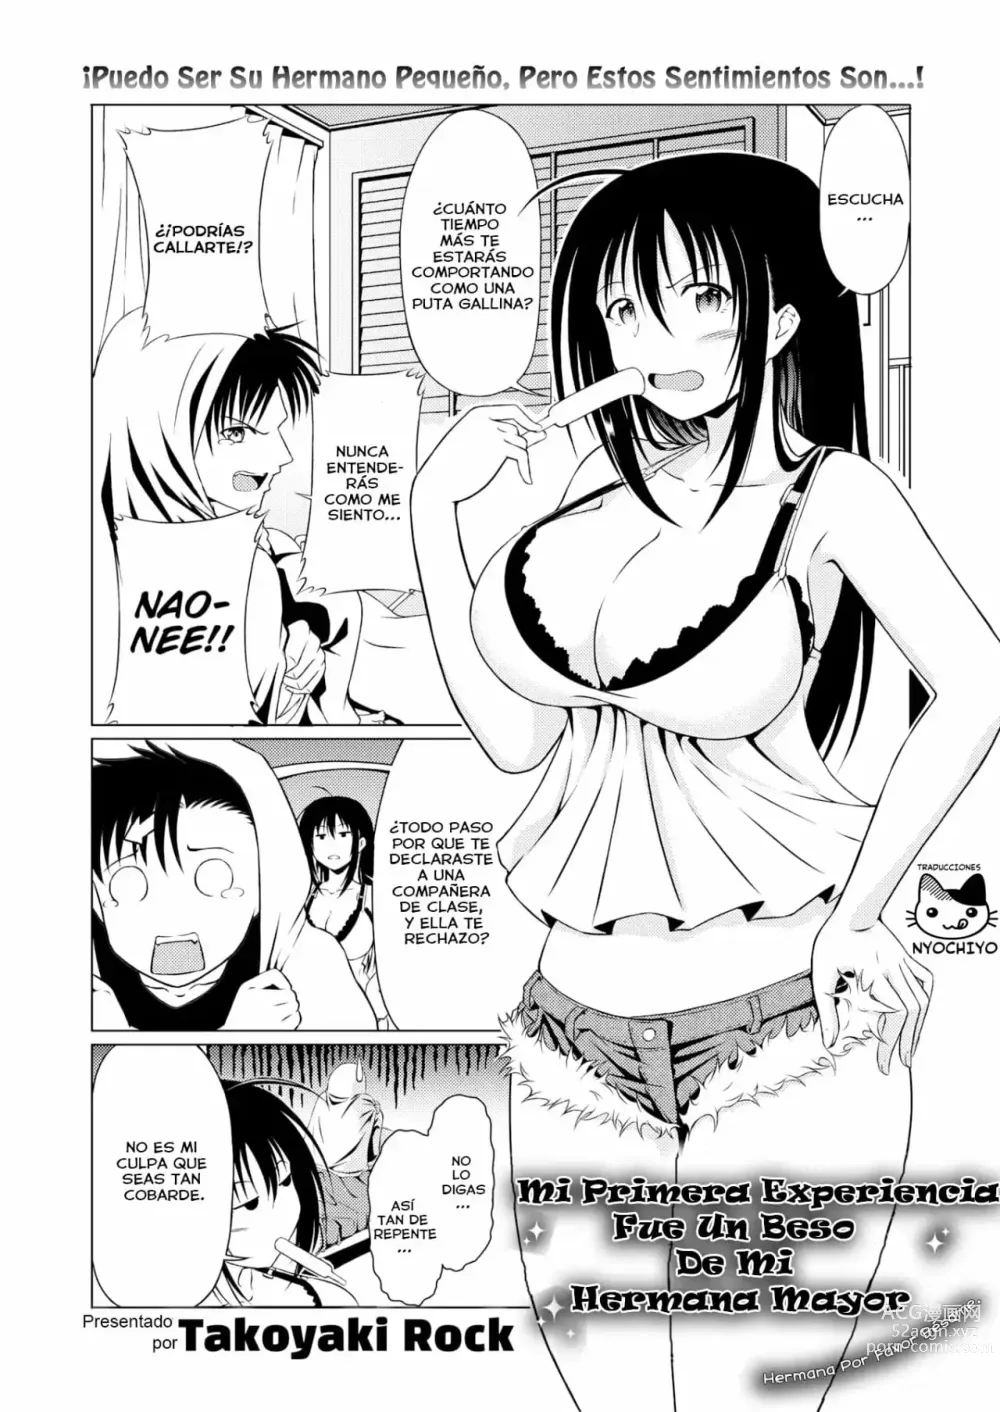 Page 2 of manga Mi Primera Experiencia fue un Beso de mi Hermana Mayor